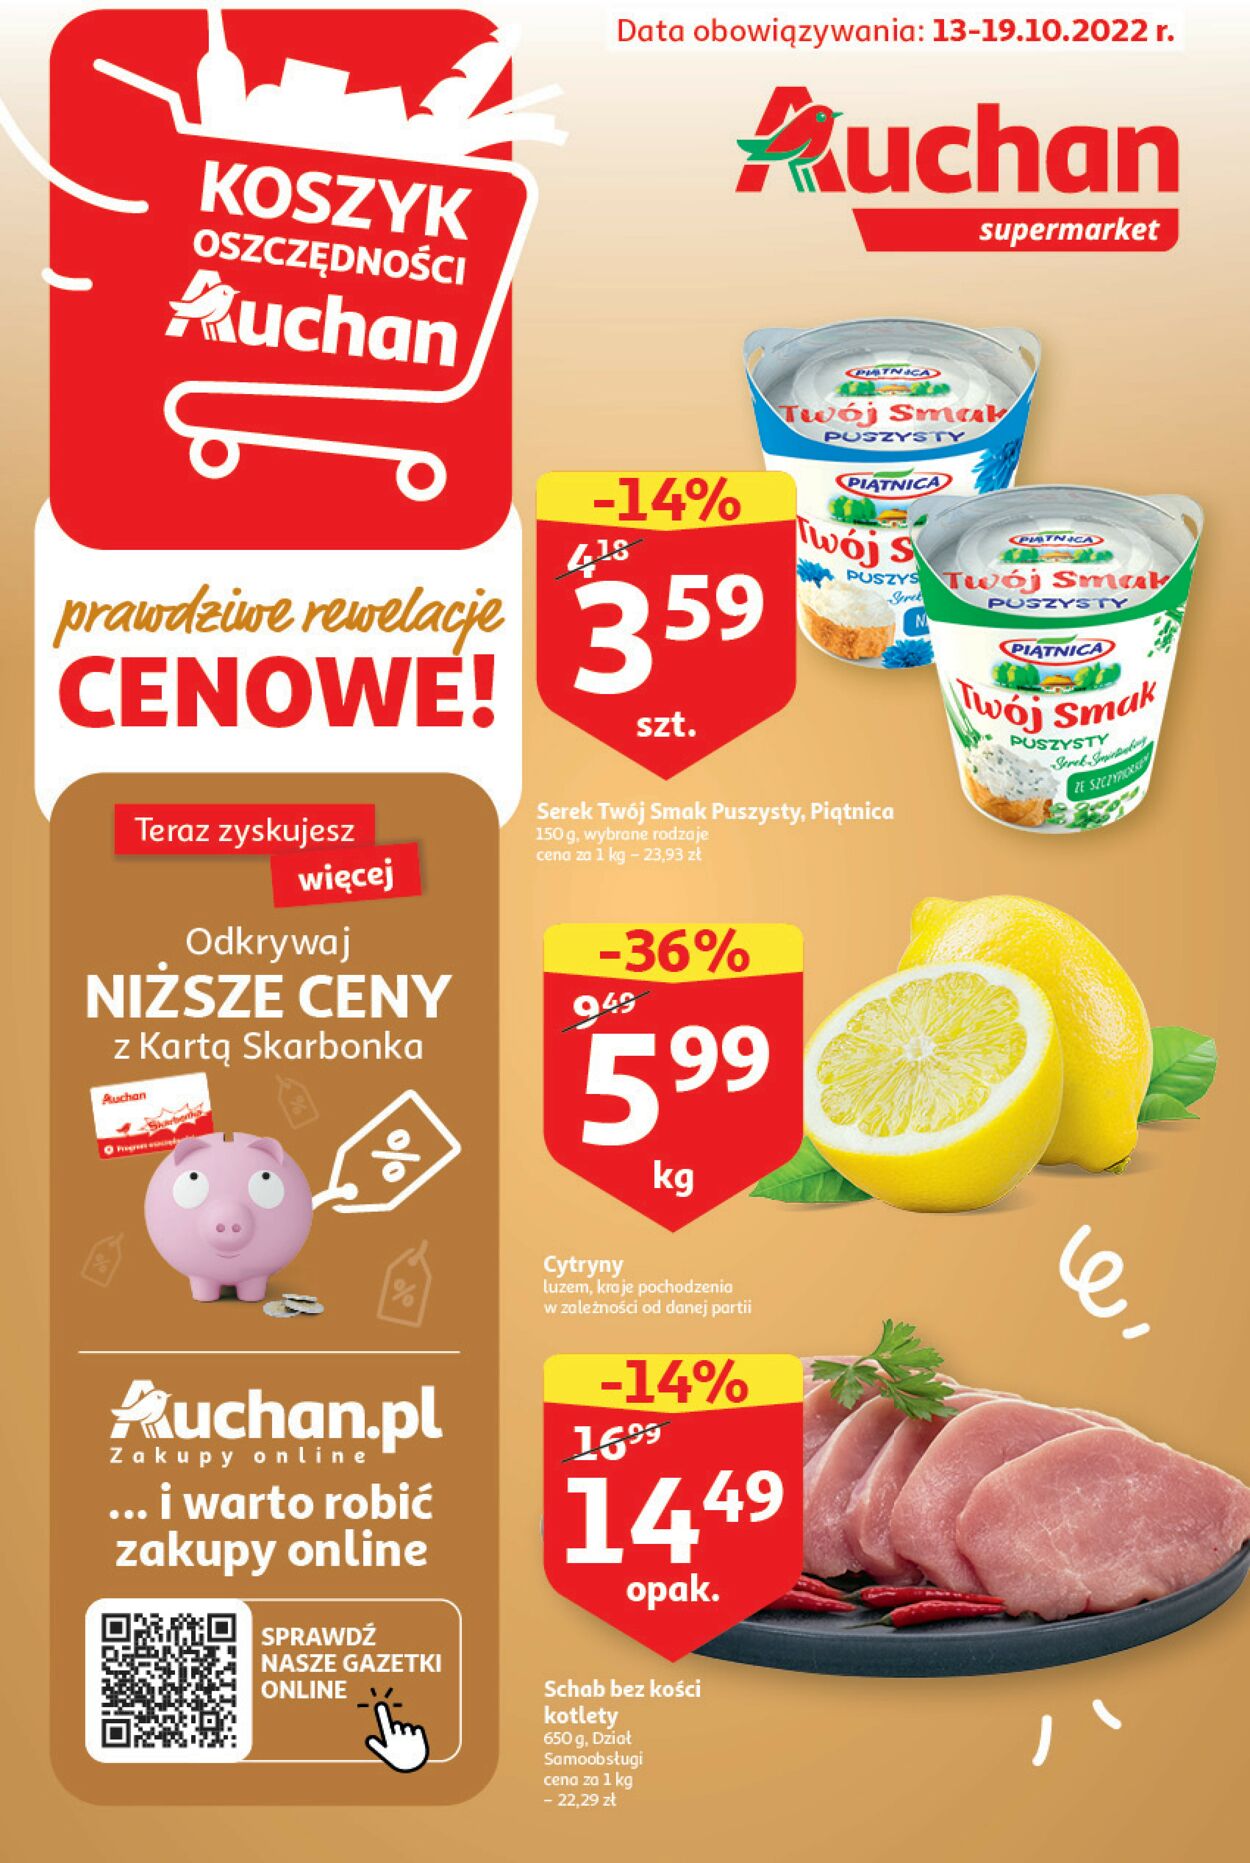 Gazetka Auchan od 13.10.2022 do 19.10.2022 - Supermarket